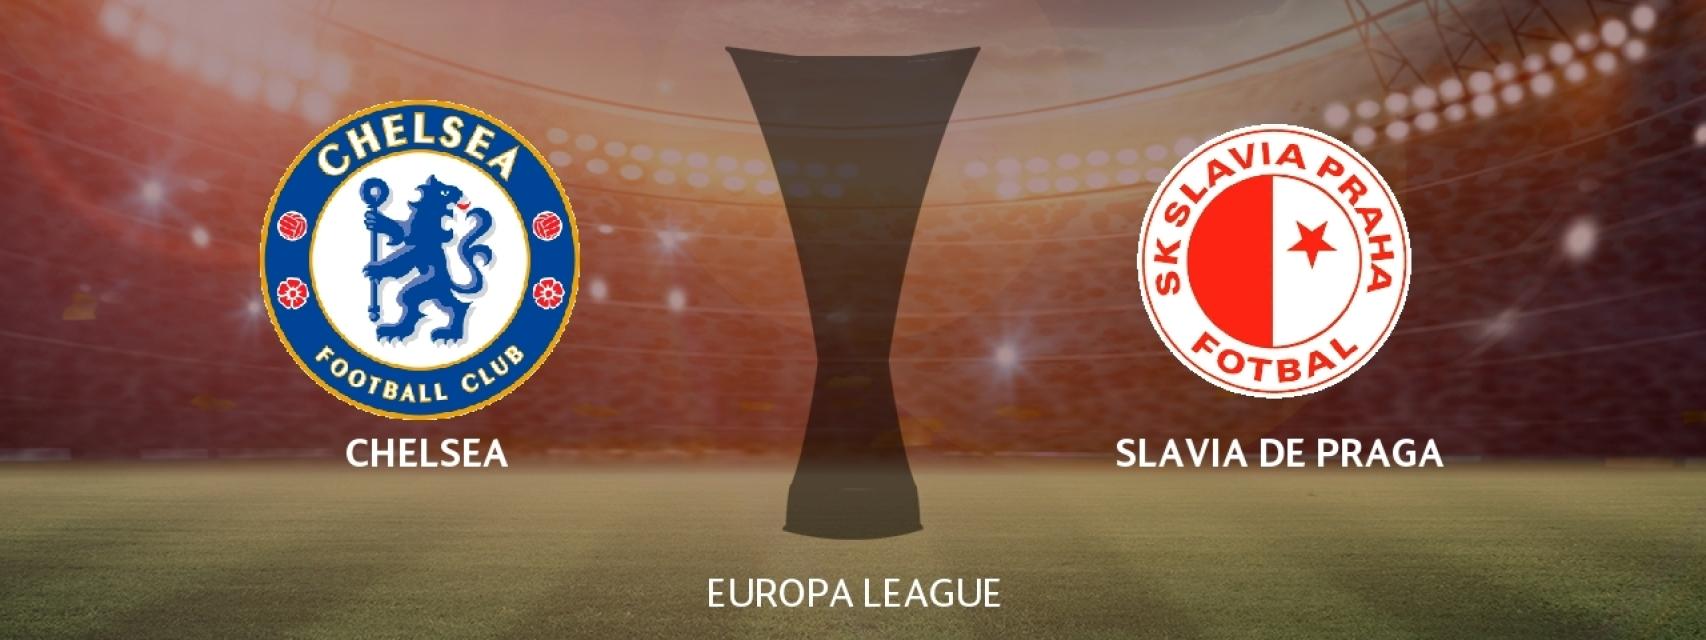 Chelsea - Slavia de Praga